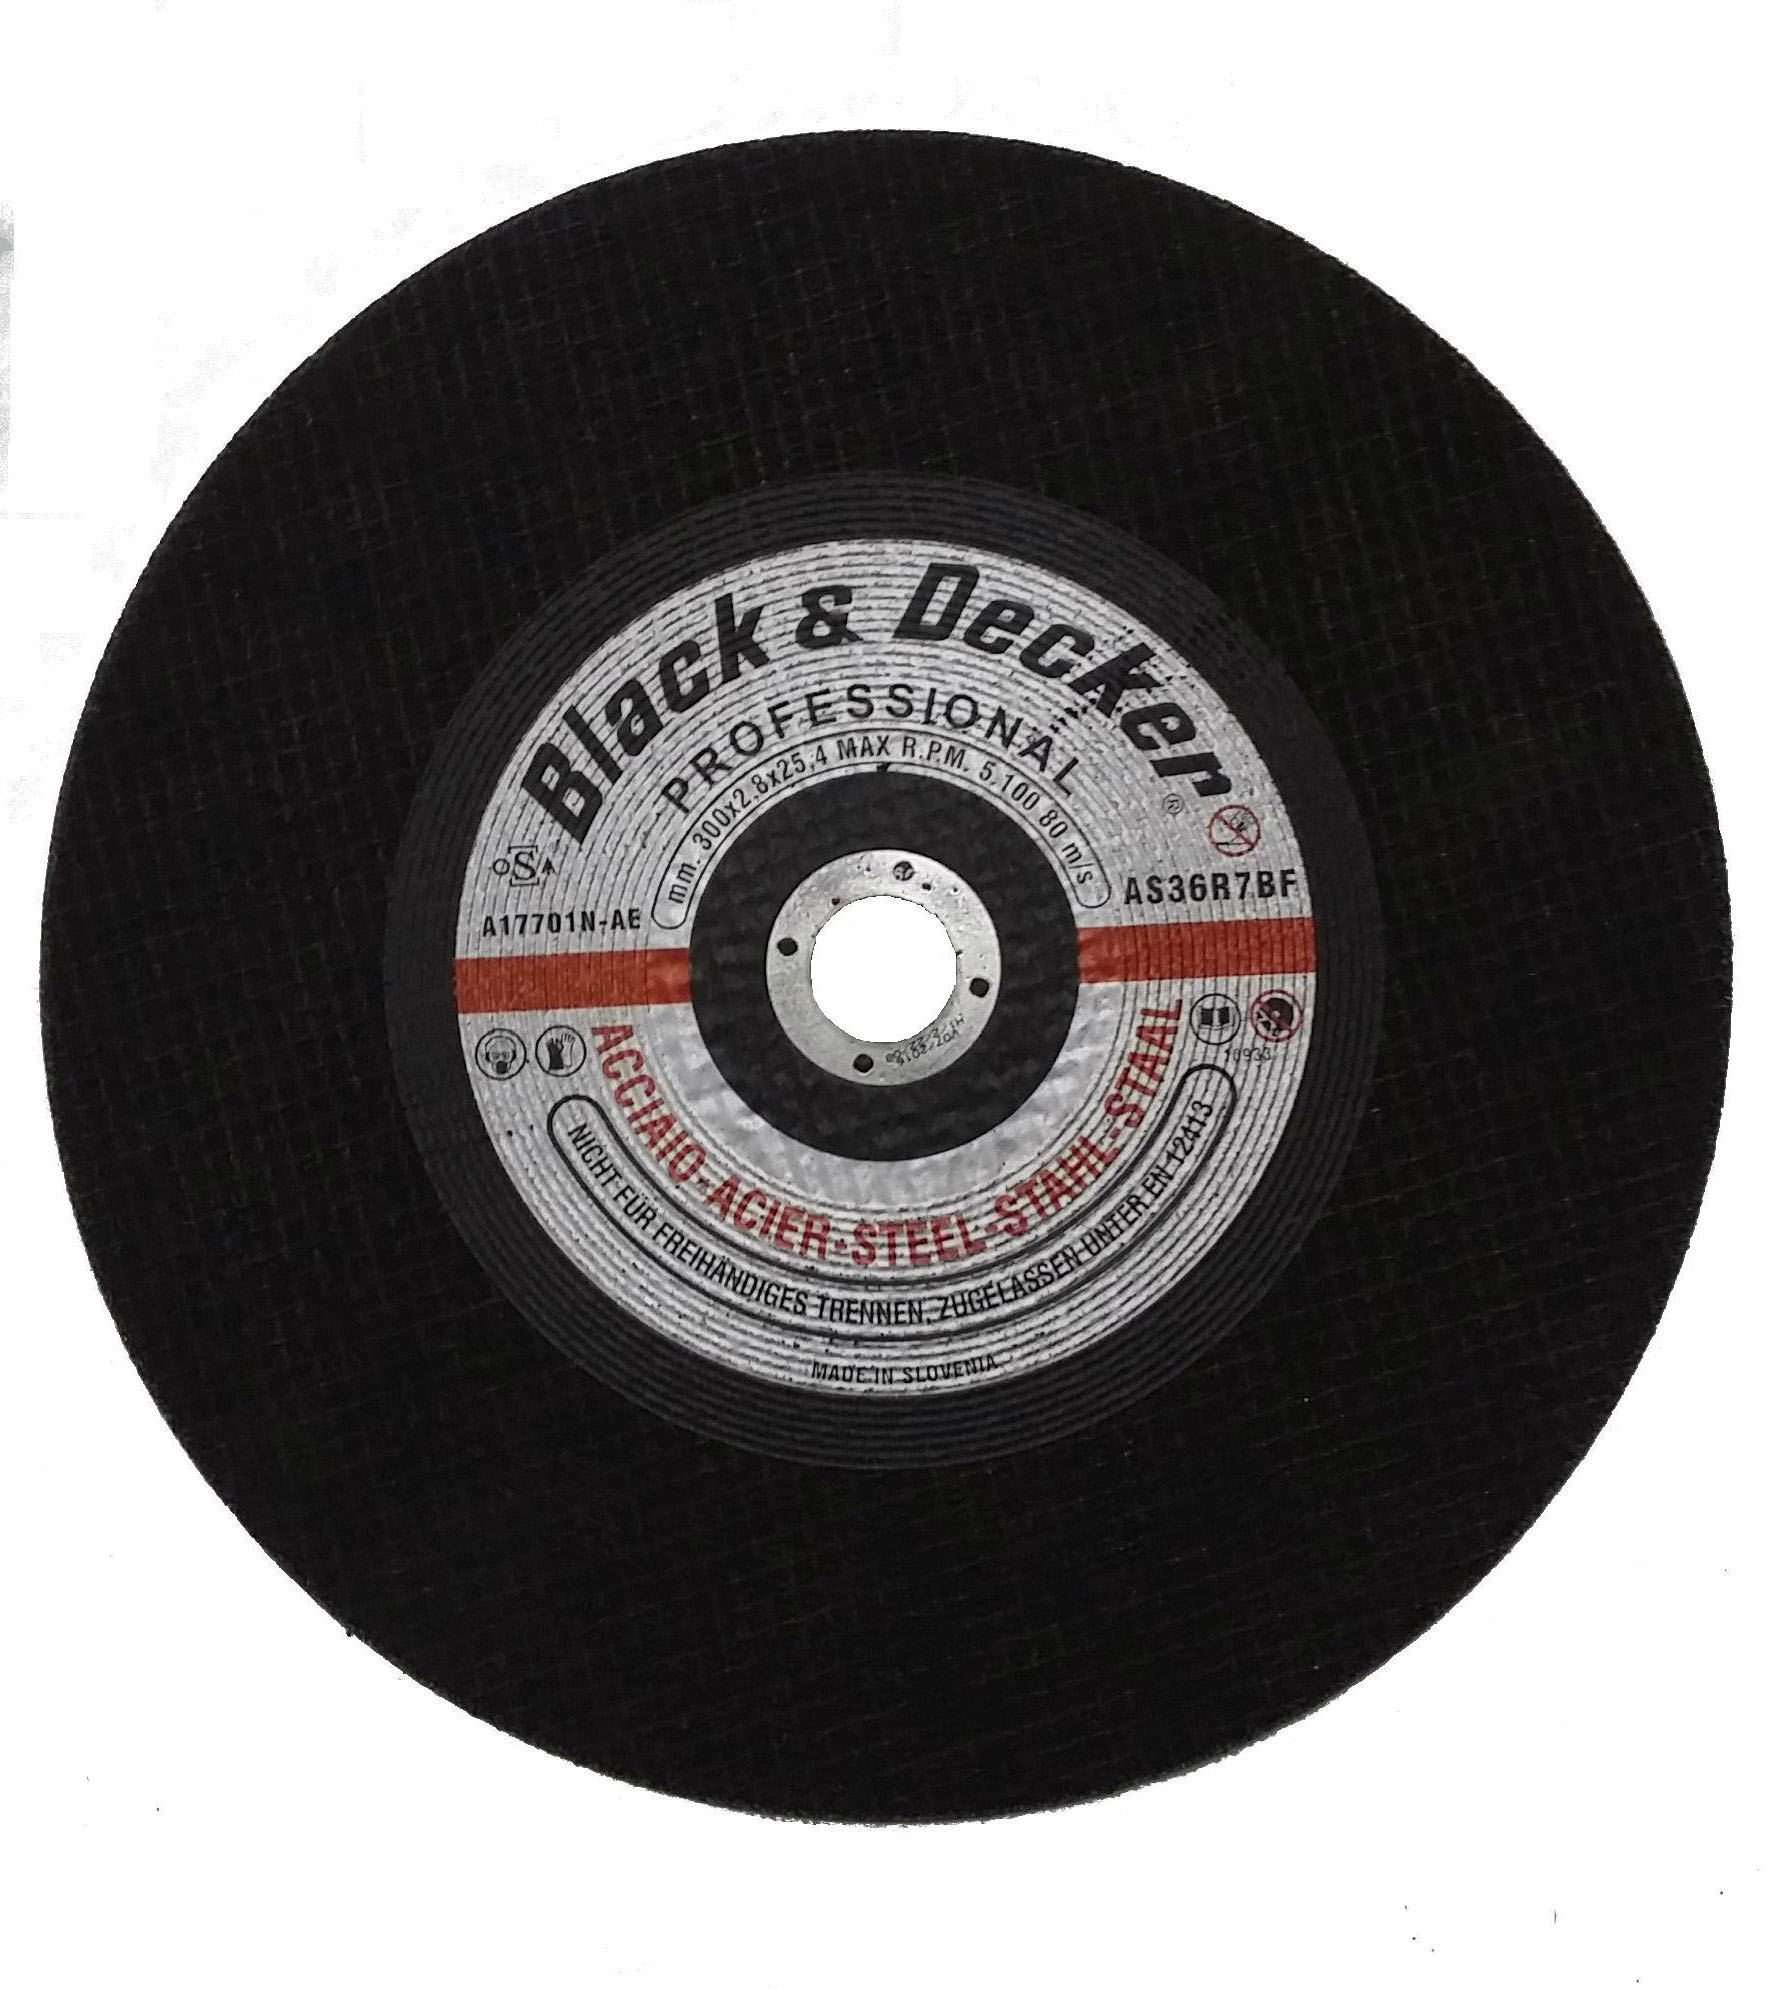 Black & Decker BD-KG2001D 220volts Metal Cutting Disc - World Import